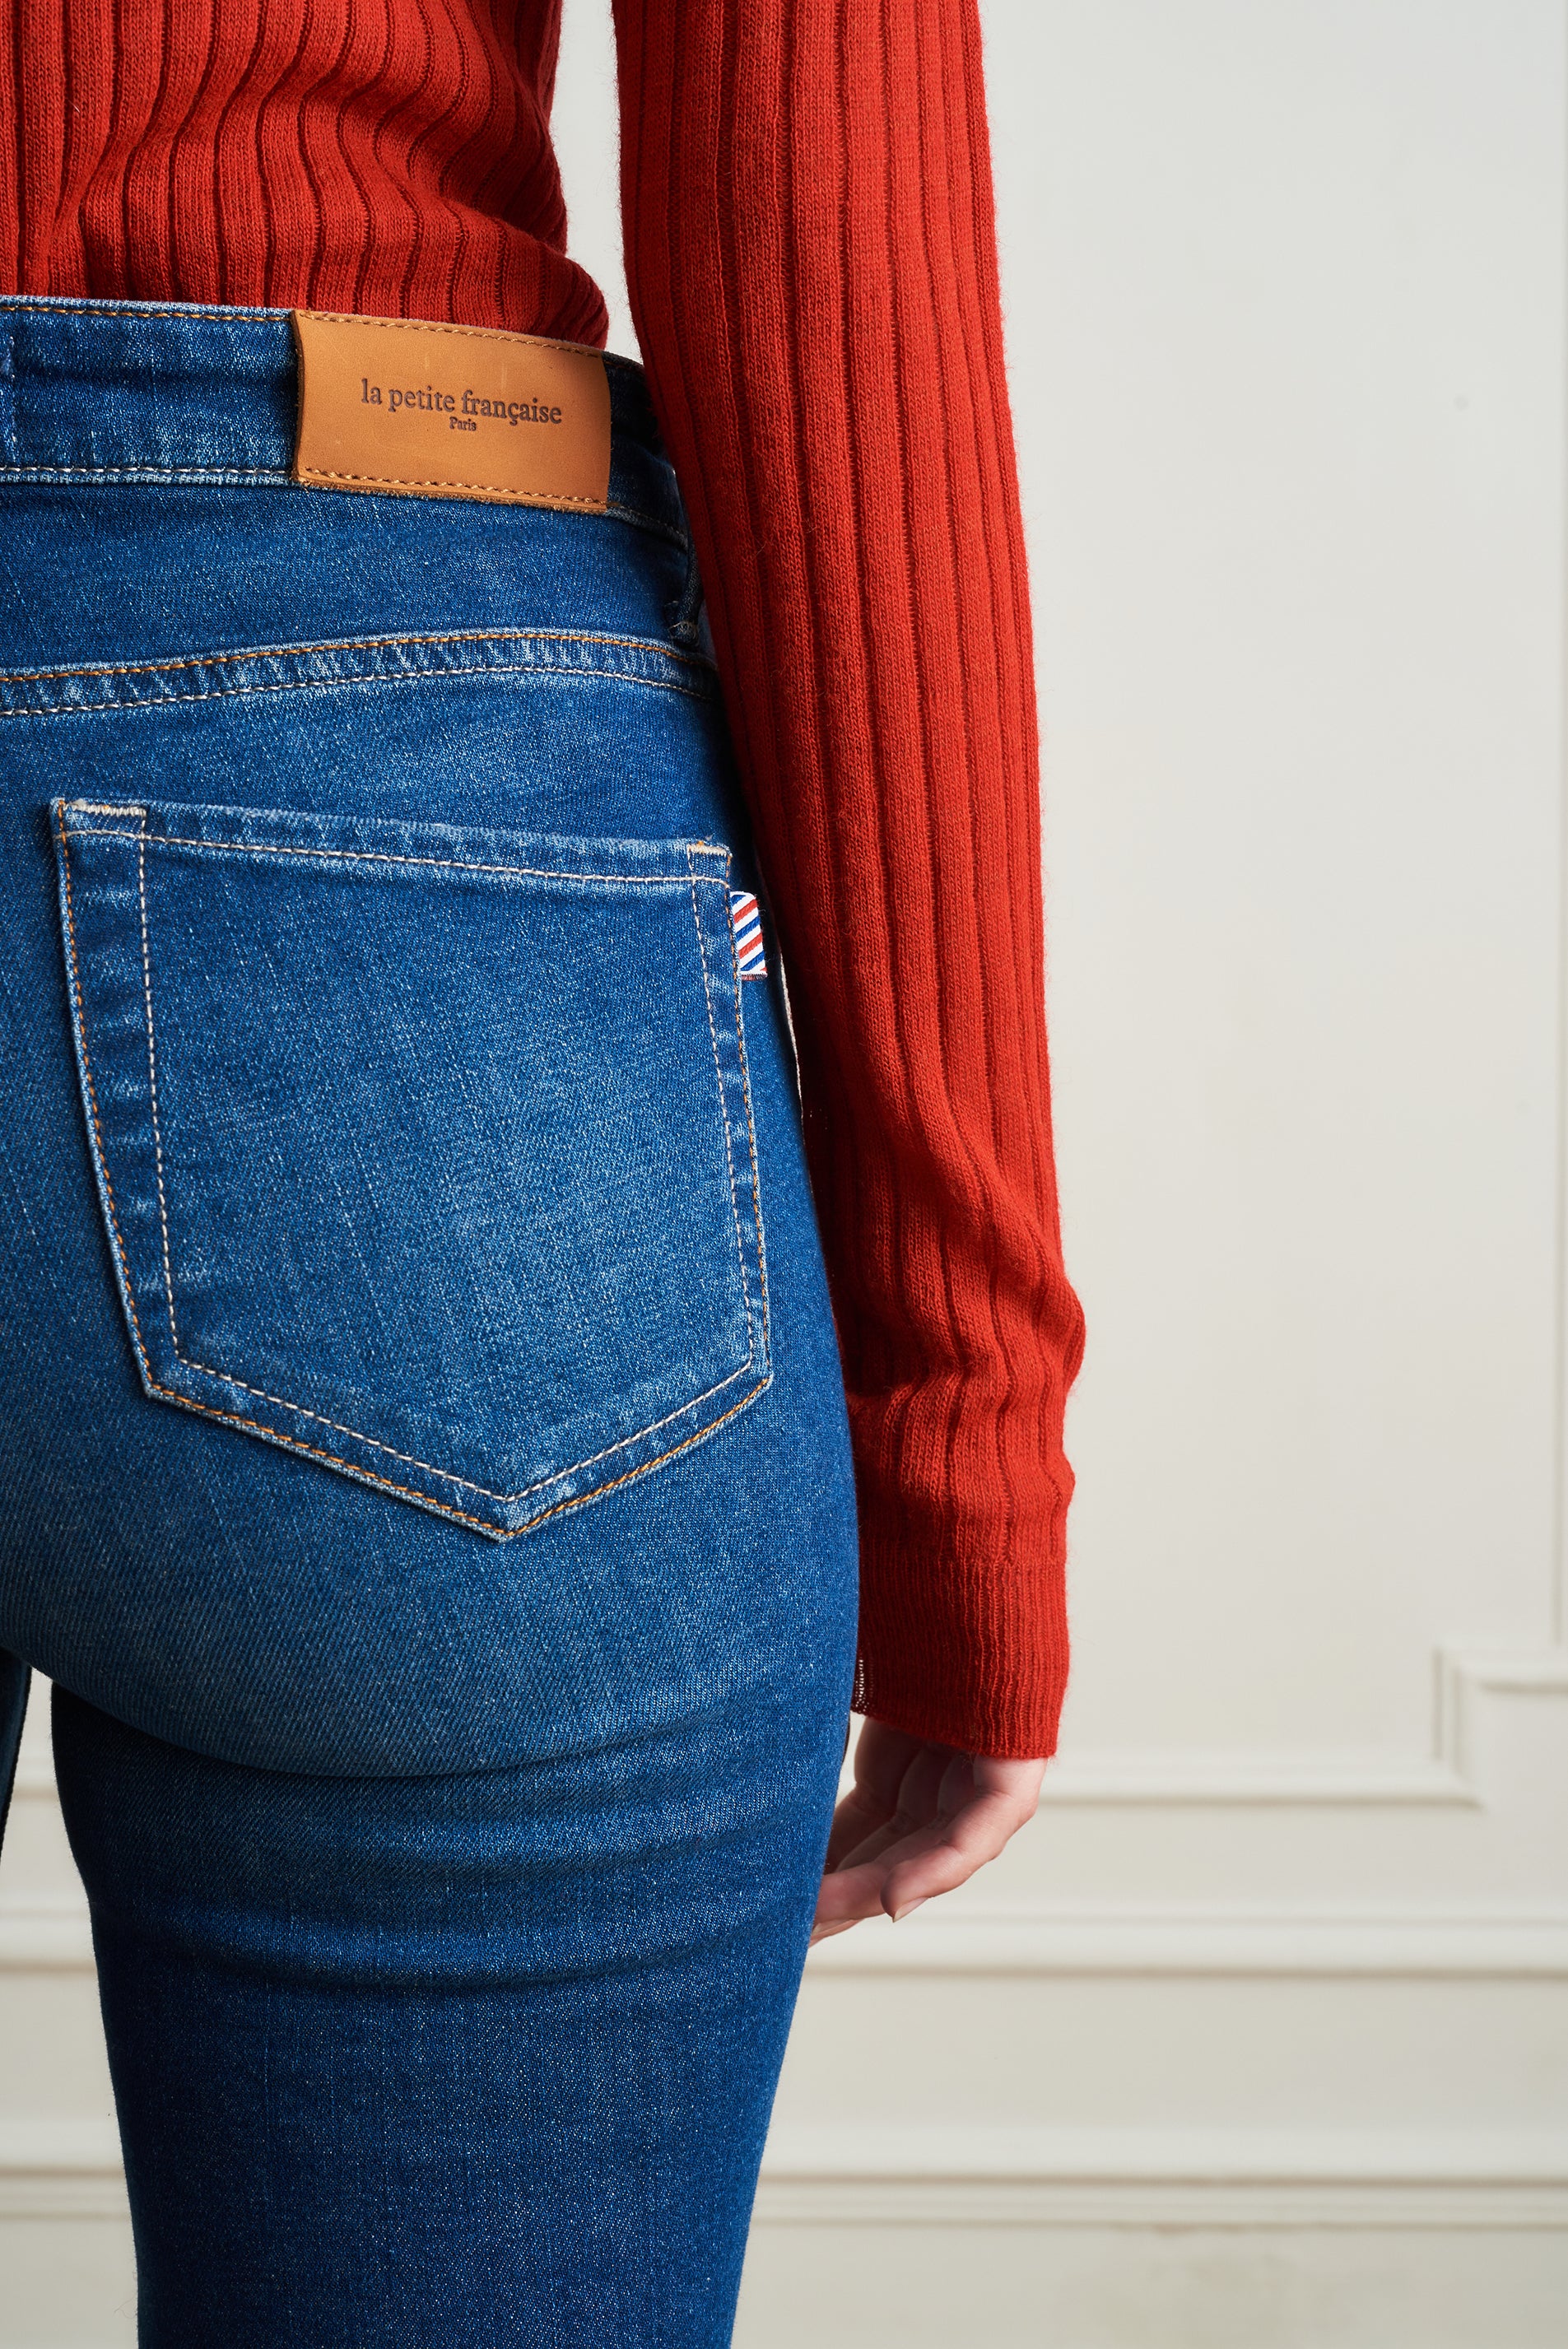 La Petite Française - Jeans Payant